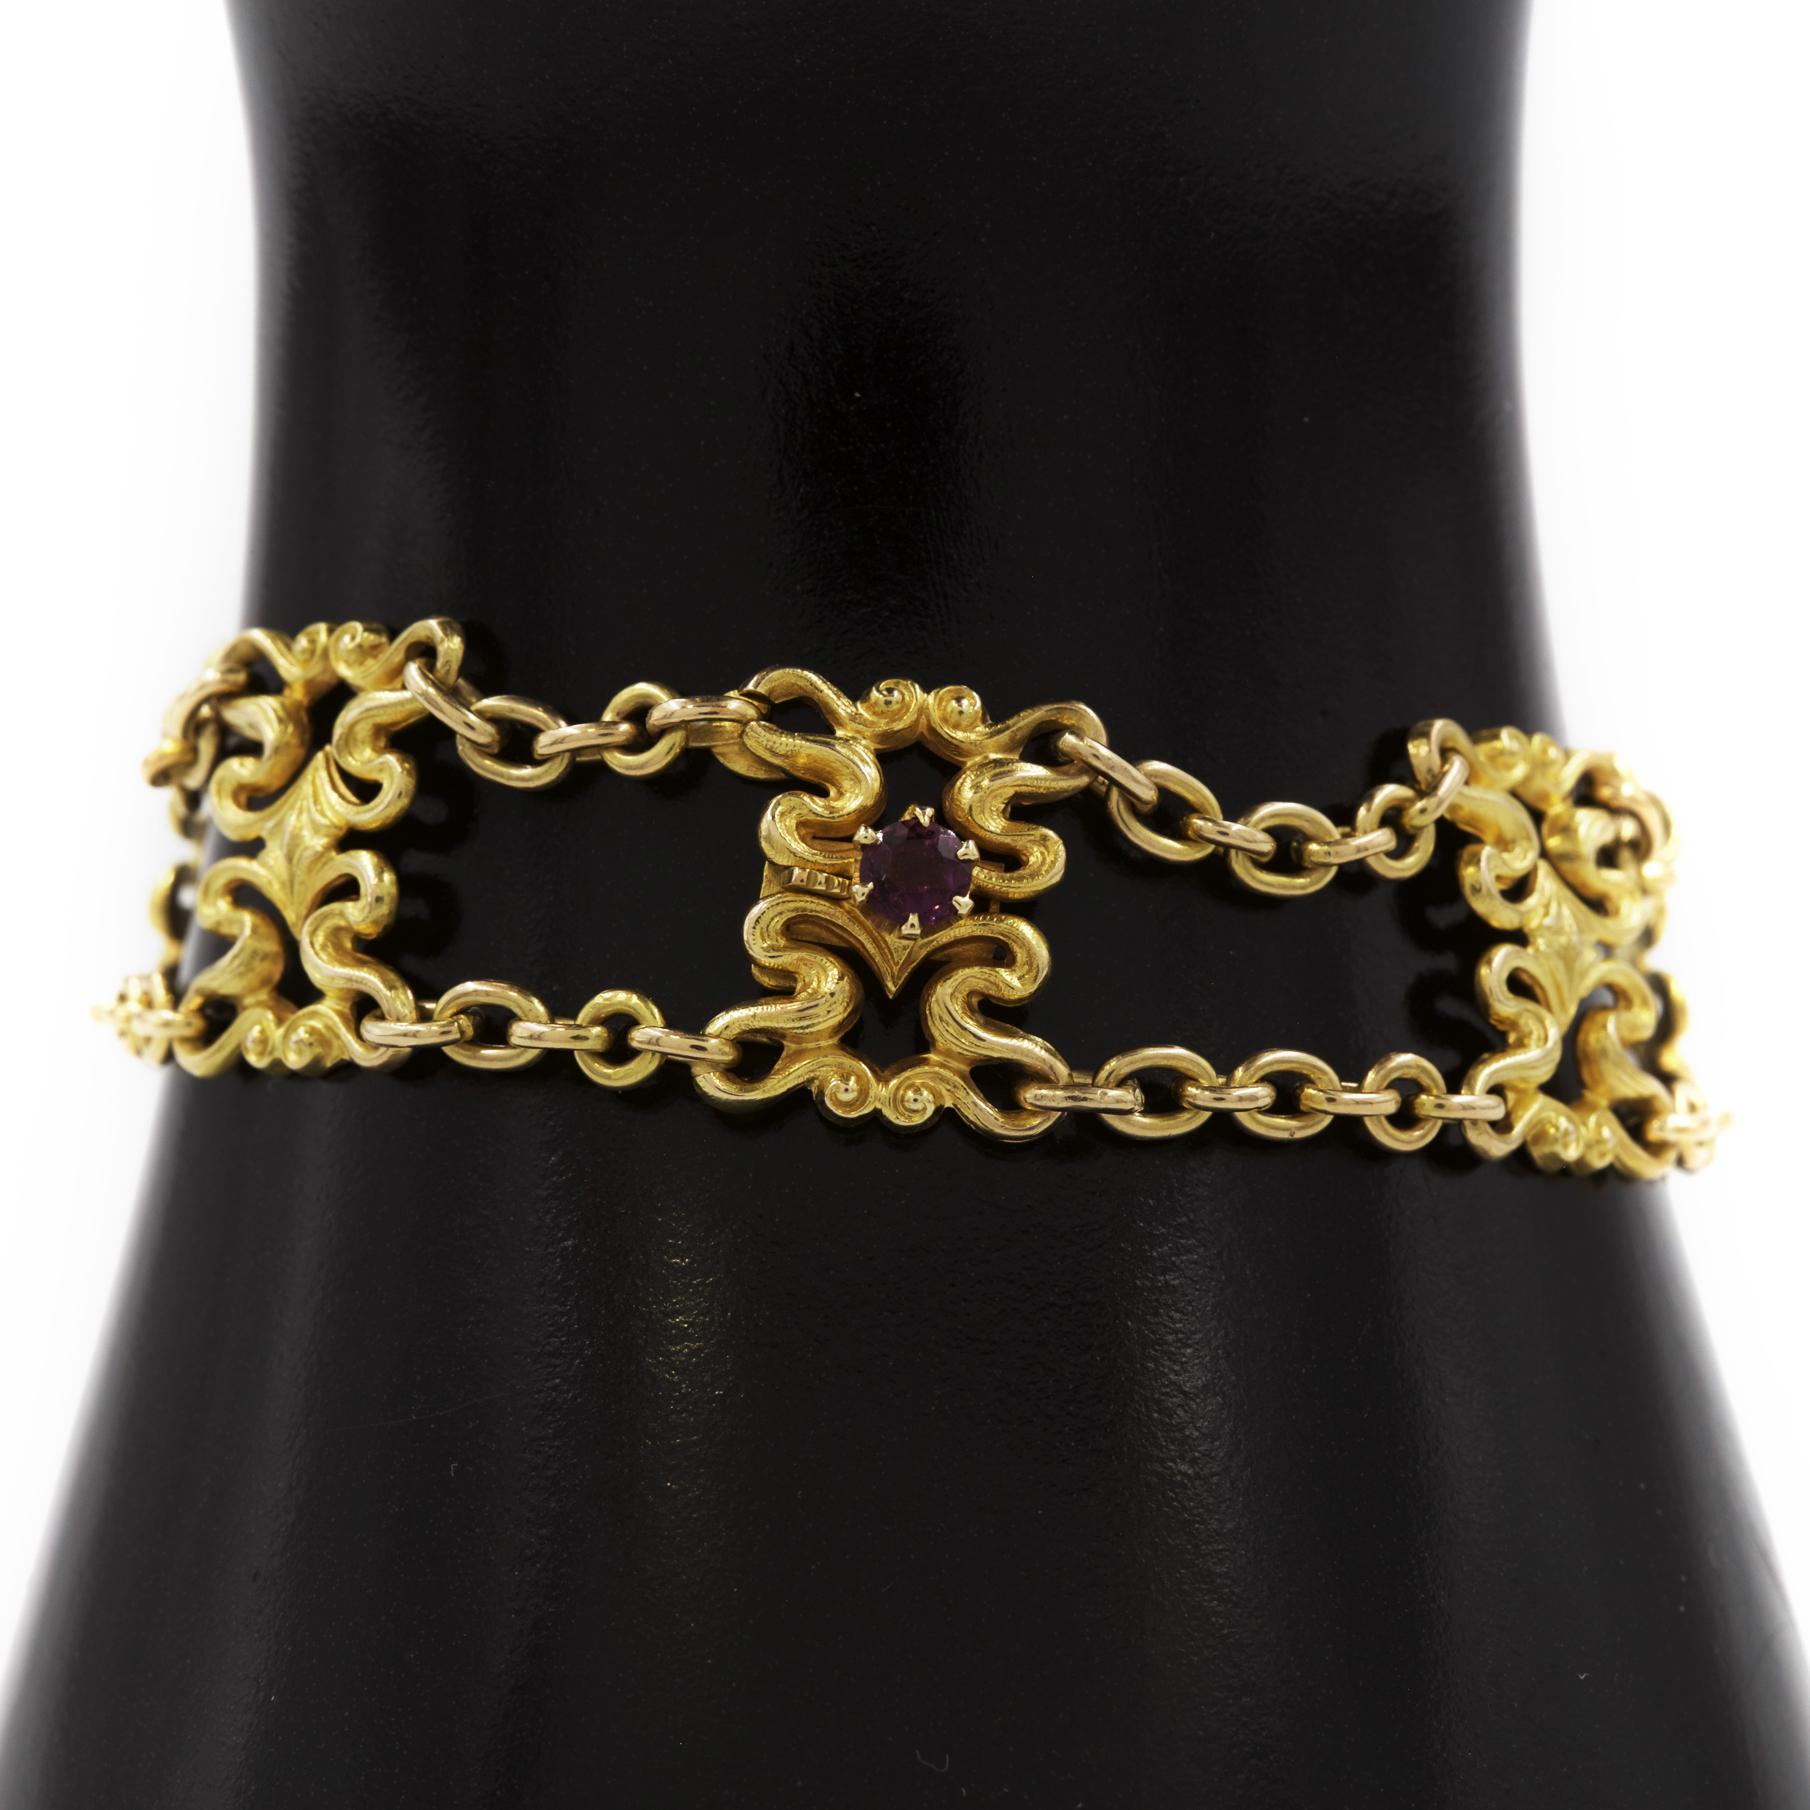 American Art Nouveau 14K Yellow Gold Strap Bracelet by Sloan & Co.